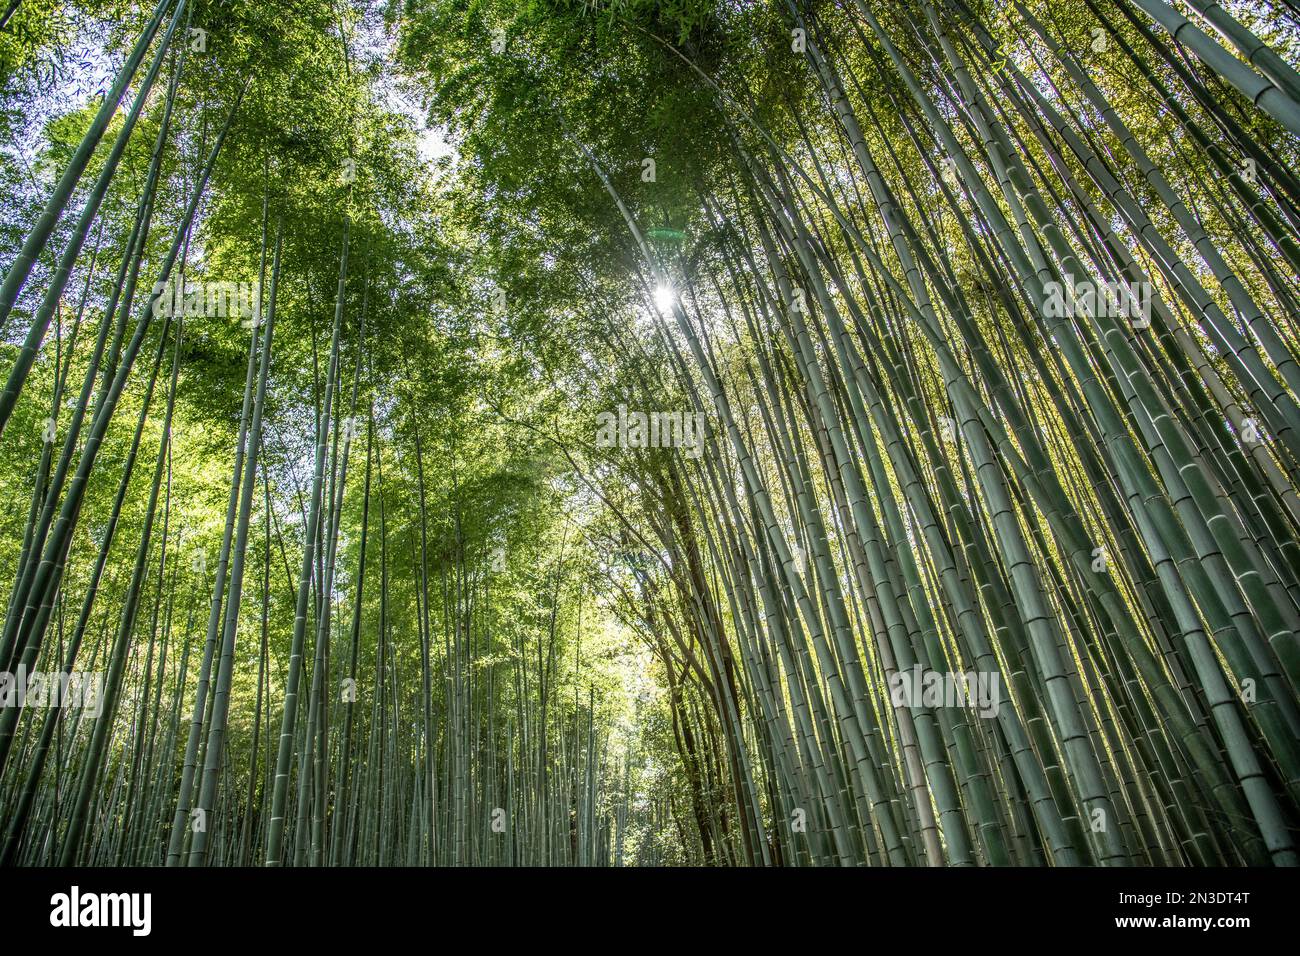 Alberi di bambù (Bambusa) nella foresta di Sagano a Kyoto, uno dei luoghi più fotografati della città. Si trova a nord-ovest di Kyoto in Giappone n... Foto Stock